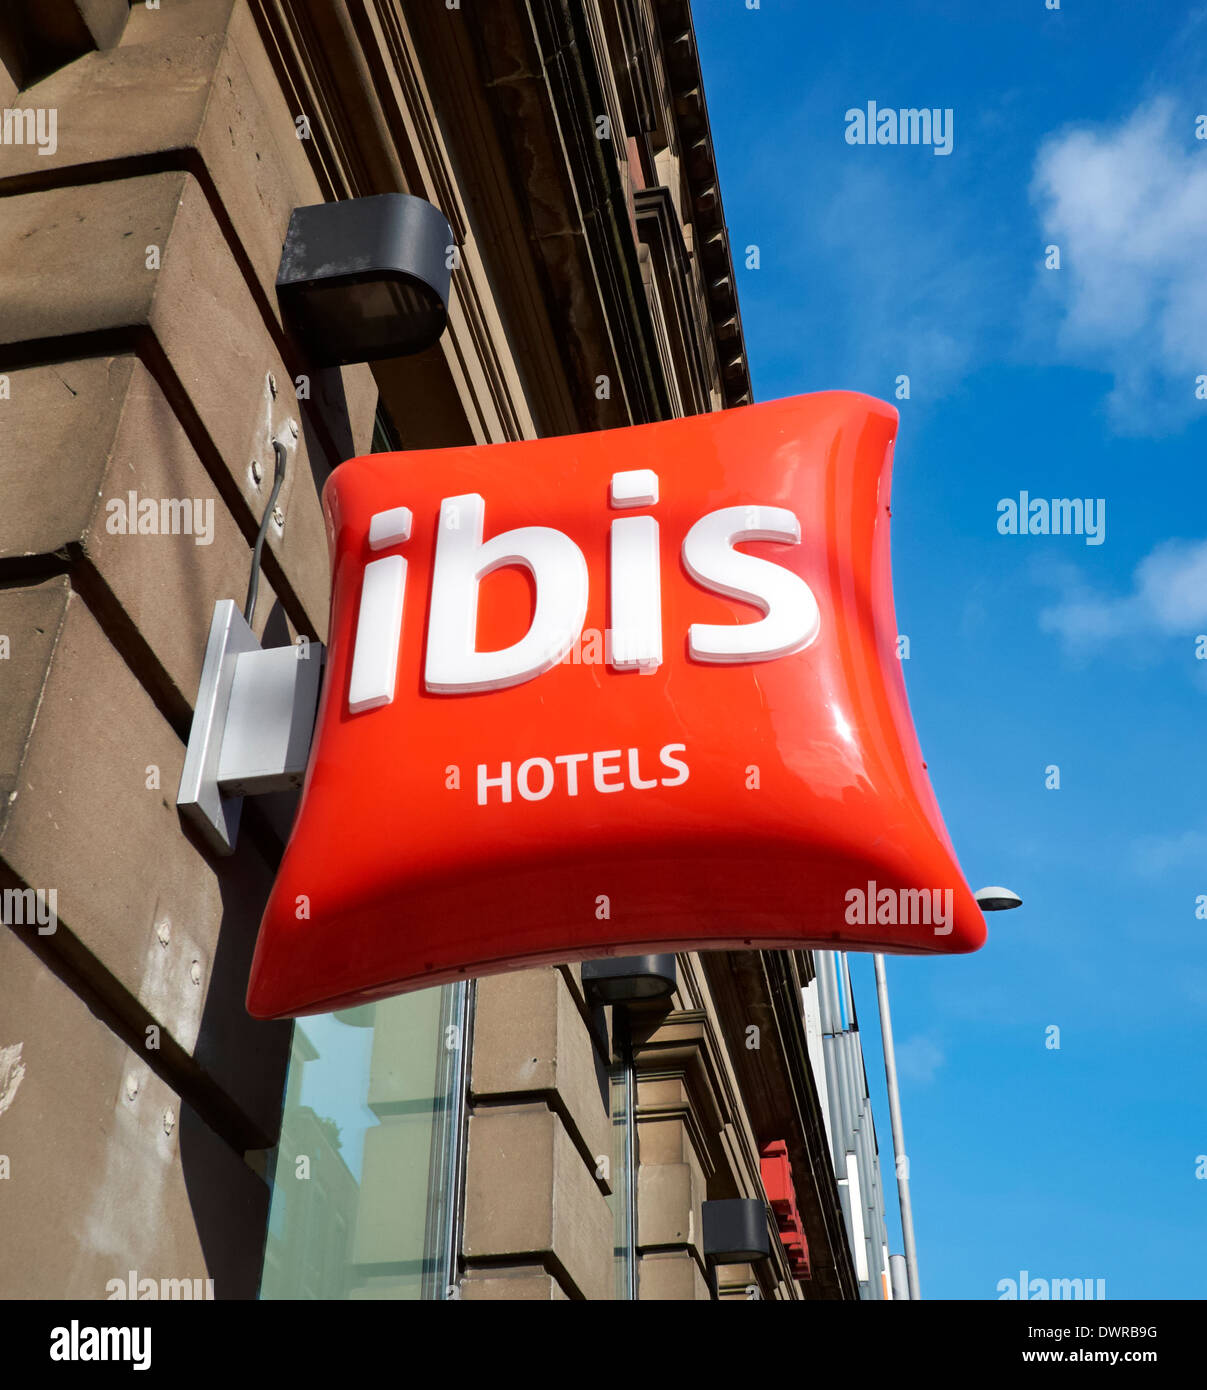 Ibis Hotel Kette Logo Zeichen Nottingham England Stockfotografie - Alamy